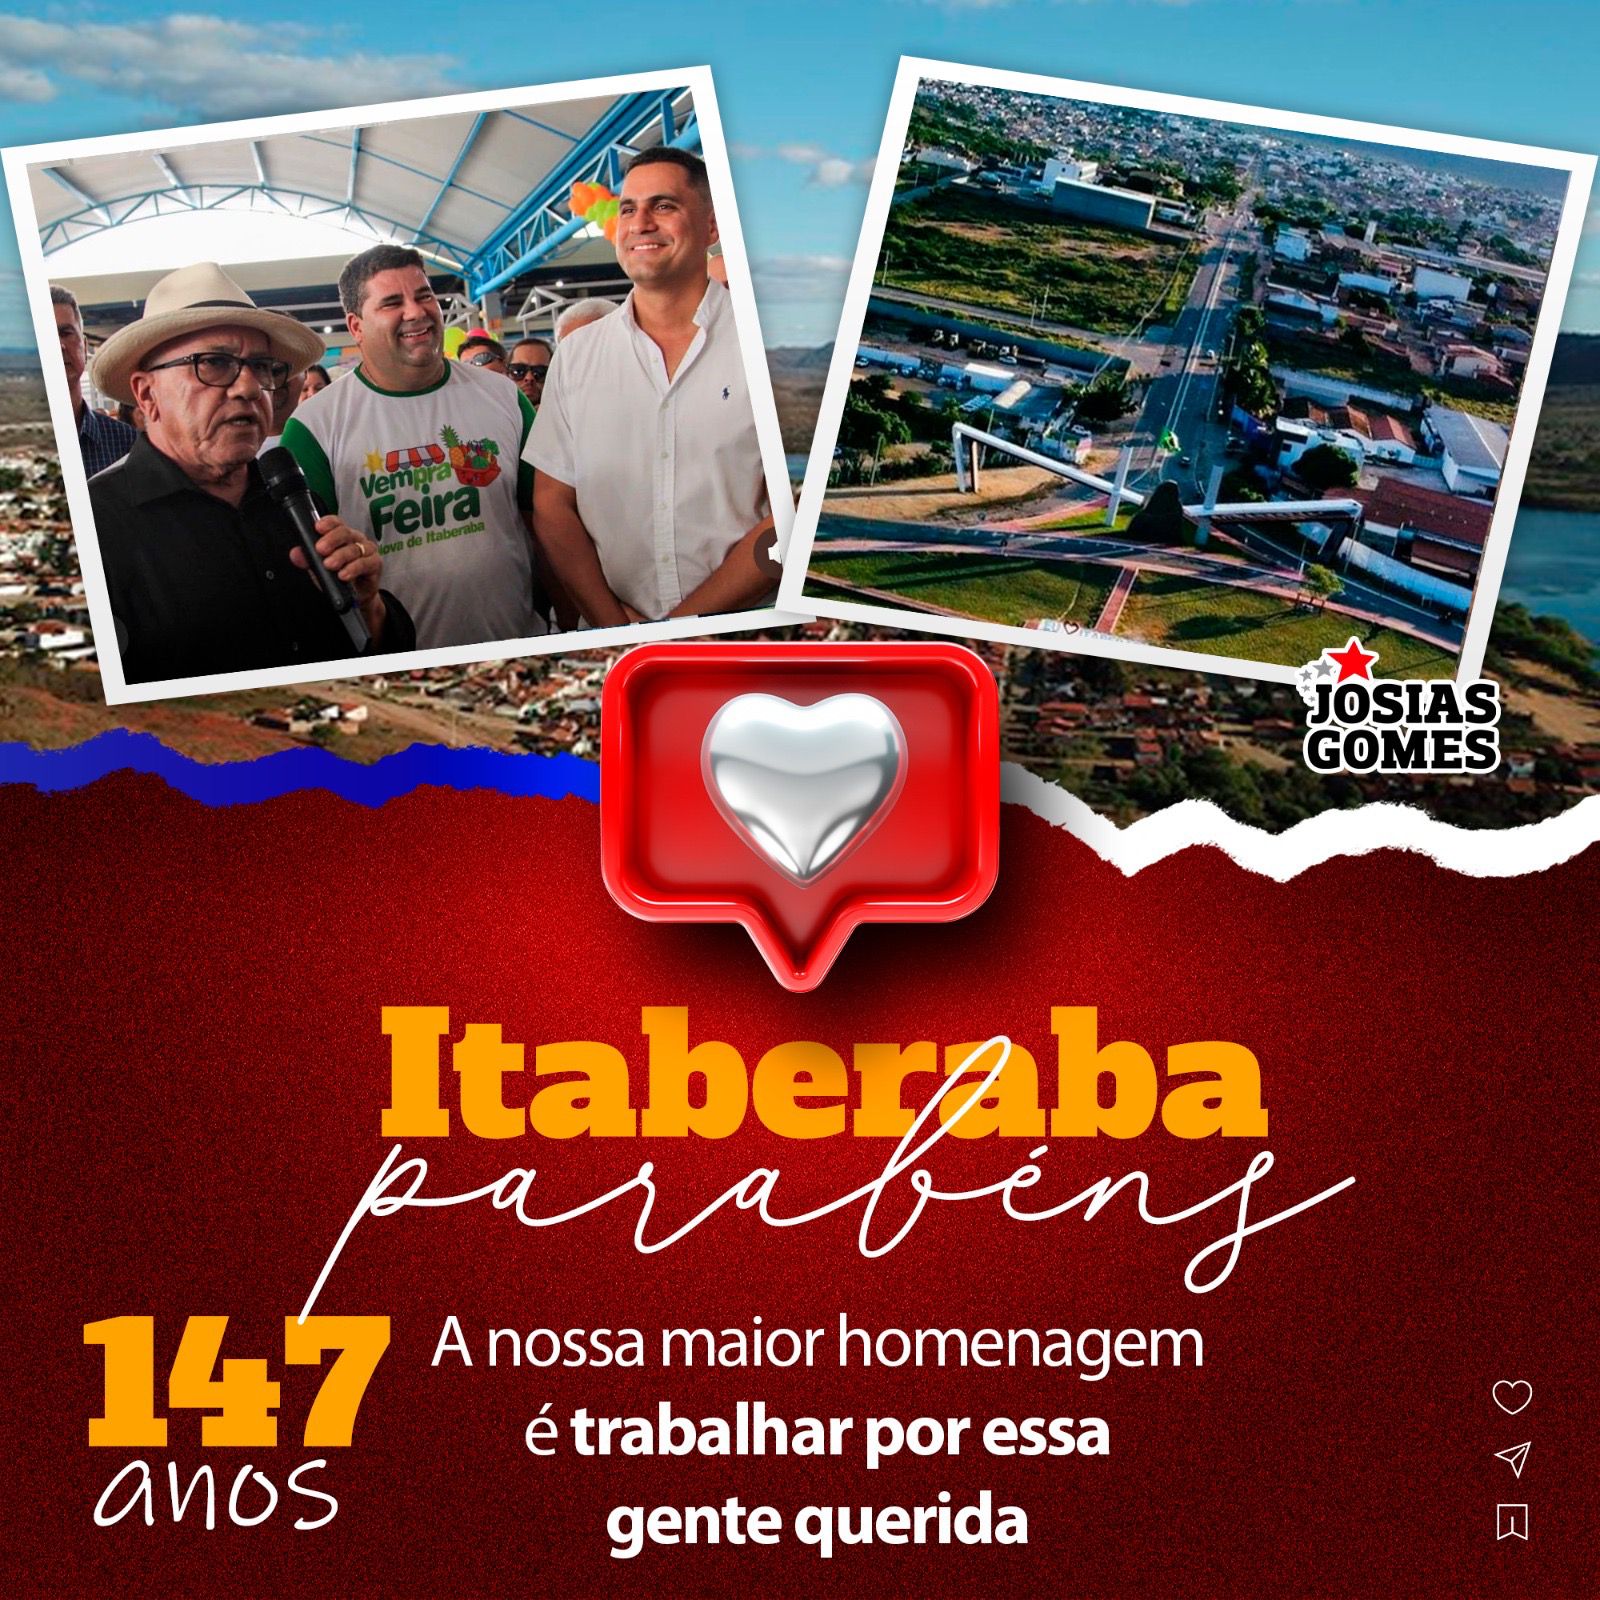 Parabéns, Itaberaba! São 147 Anos De Tradição Da Cidade A Qual Tenho O Orgulho De Ser Cidadão Itaberabense